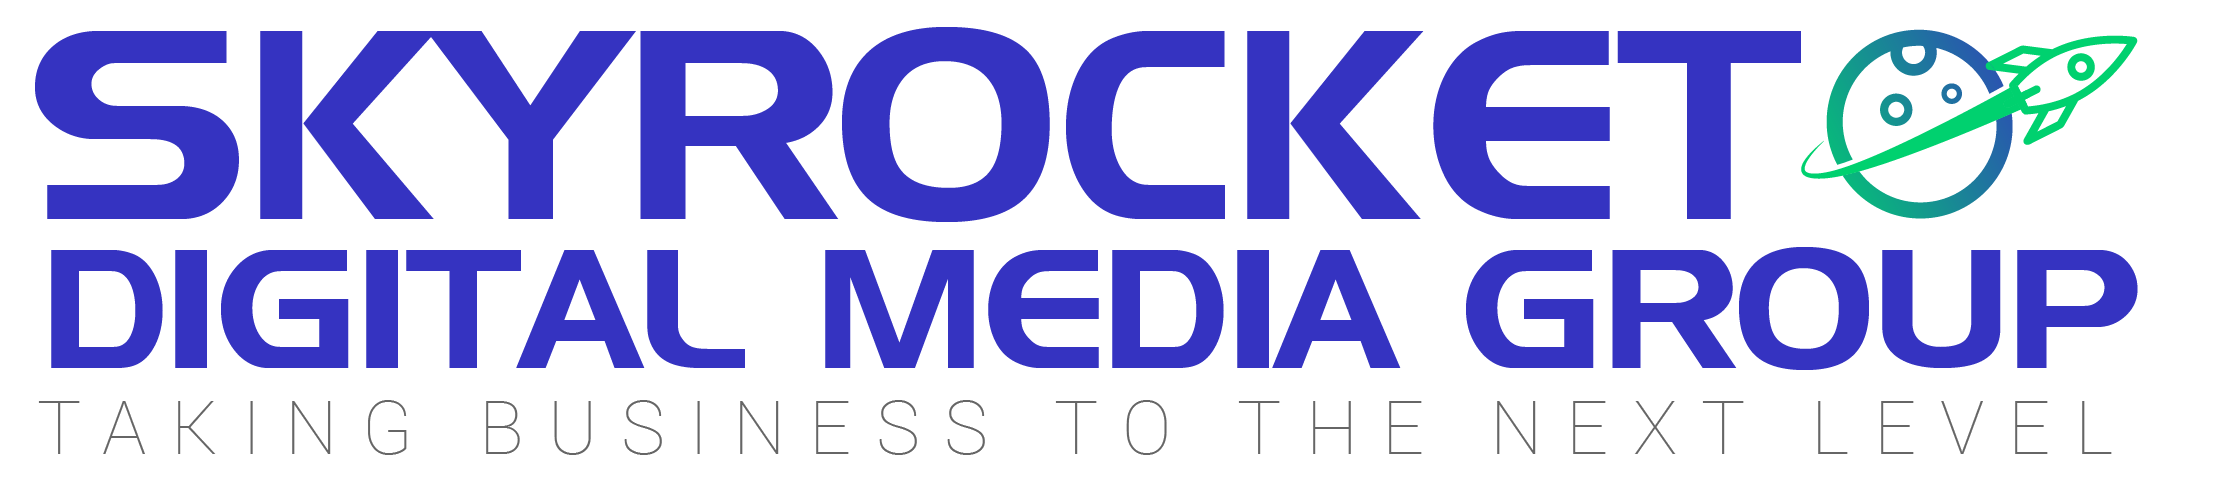 sky-rockect-media-logo